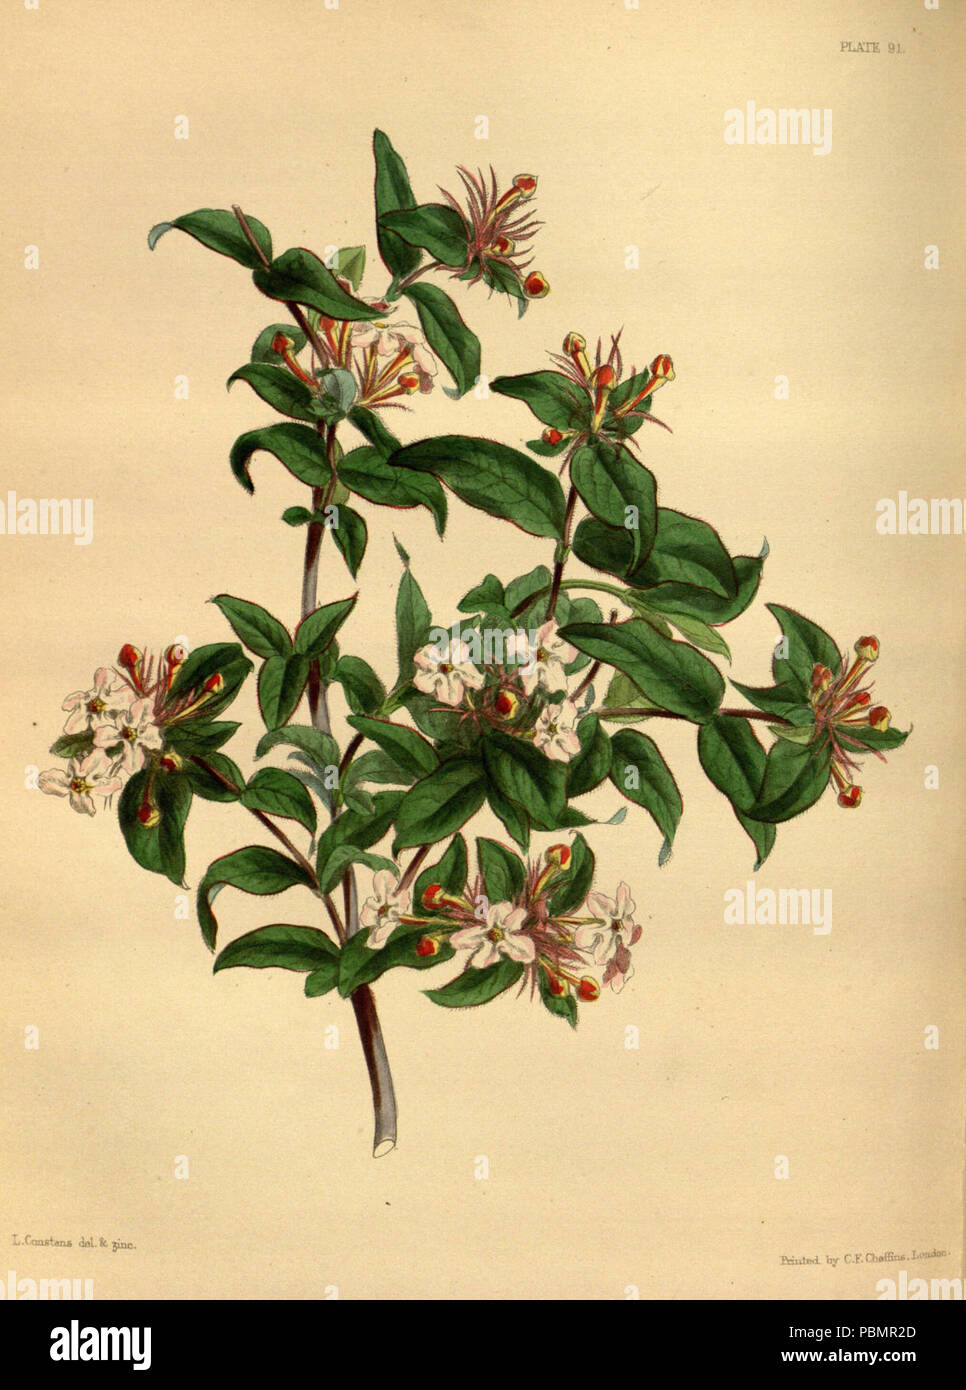 Abelia triflora paxton 091. Stock Photo